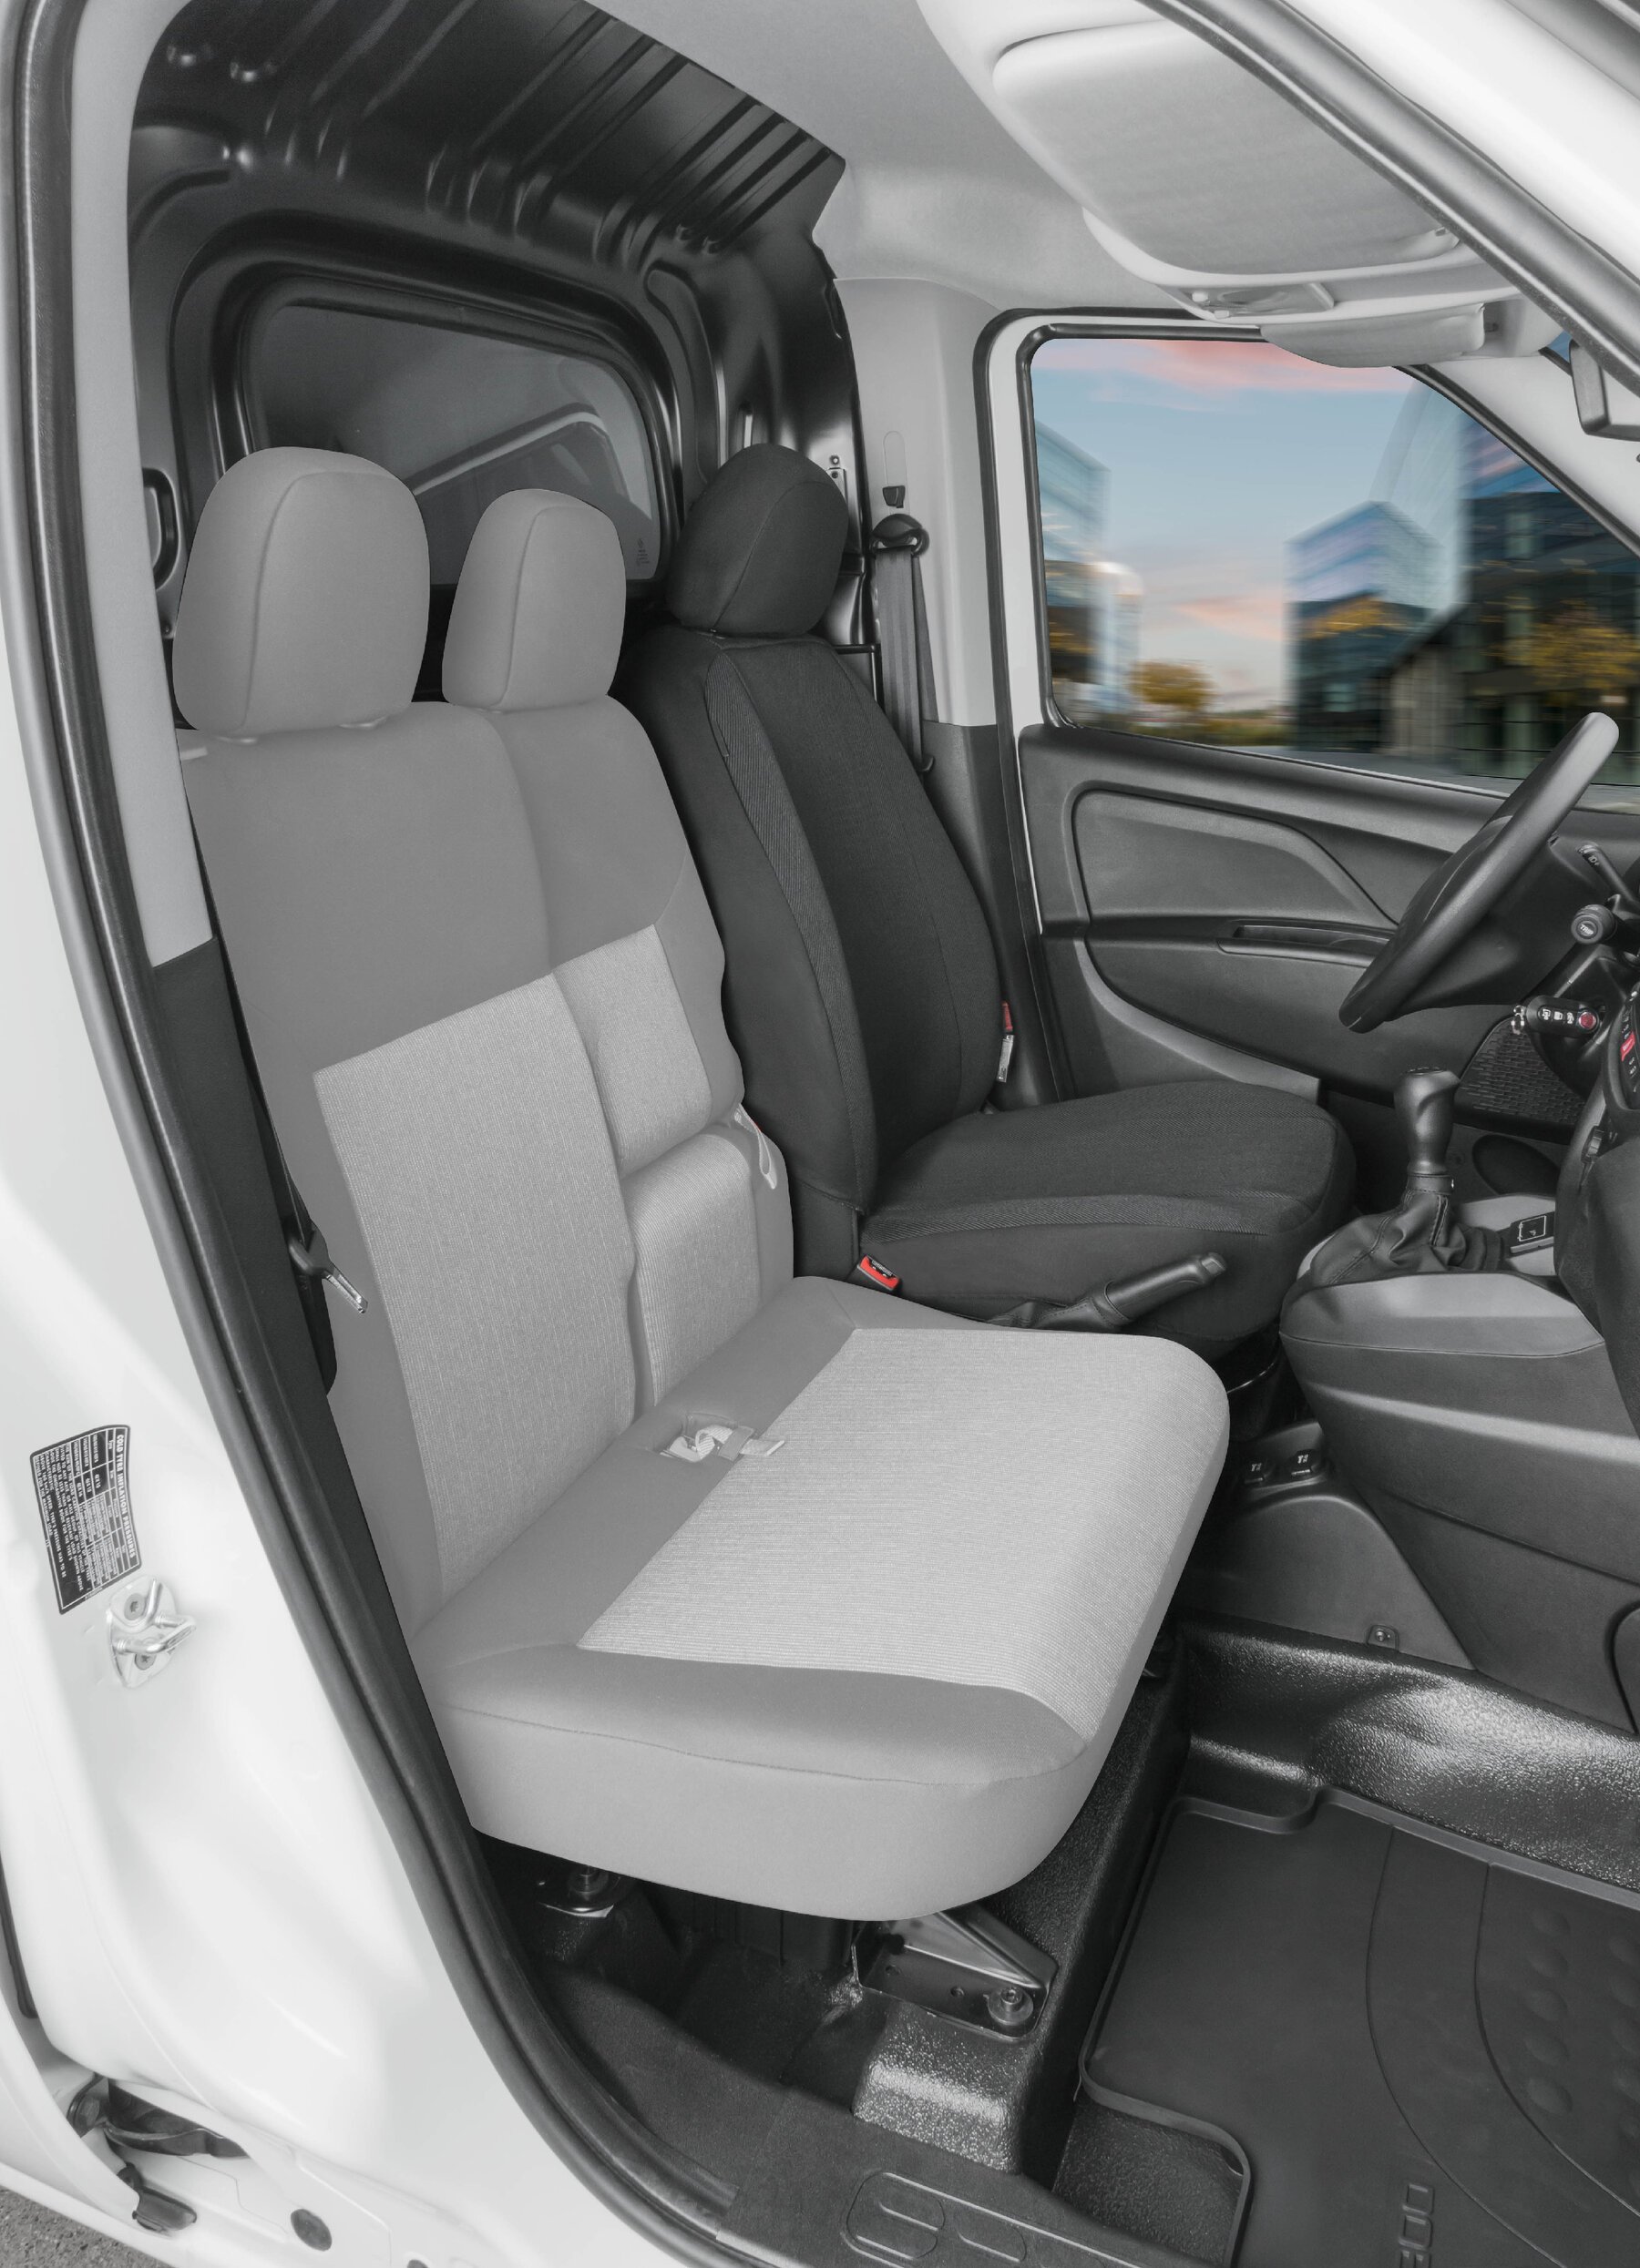 Passform Sitzbezug aus Stoff für Fiat Doblo II, Einzelsitzbezug Fahrer